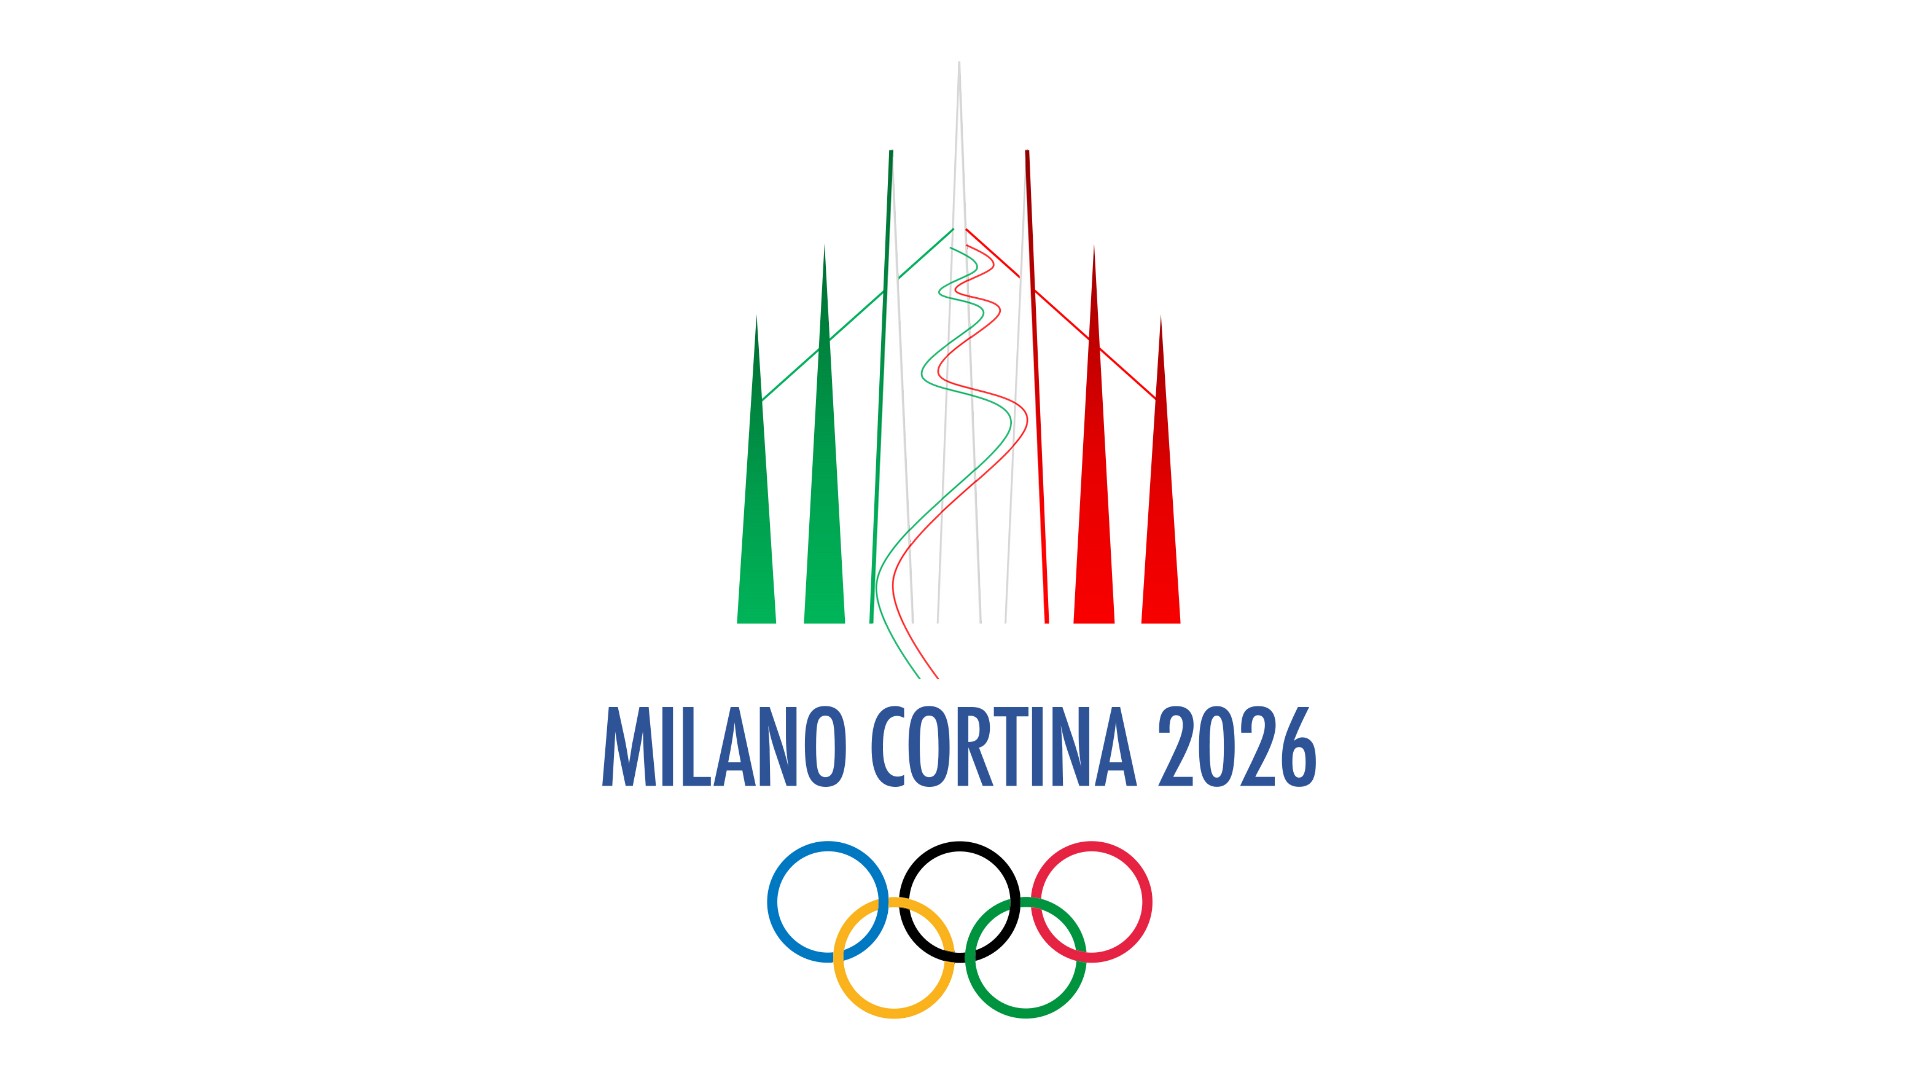 Игры 2026 где. Эмблема олимпиады 2026. Следующие Олимпийские игры зимние 2026.